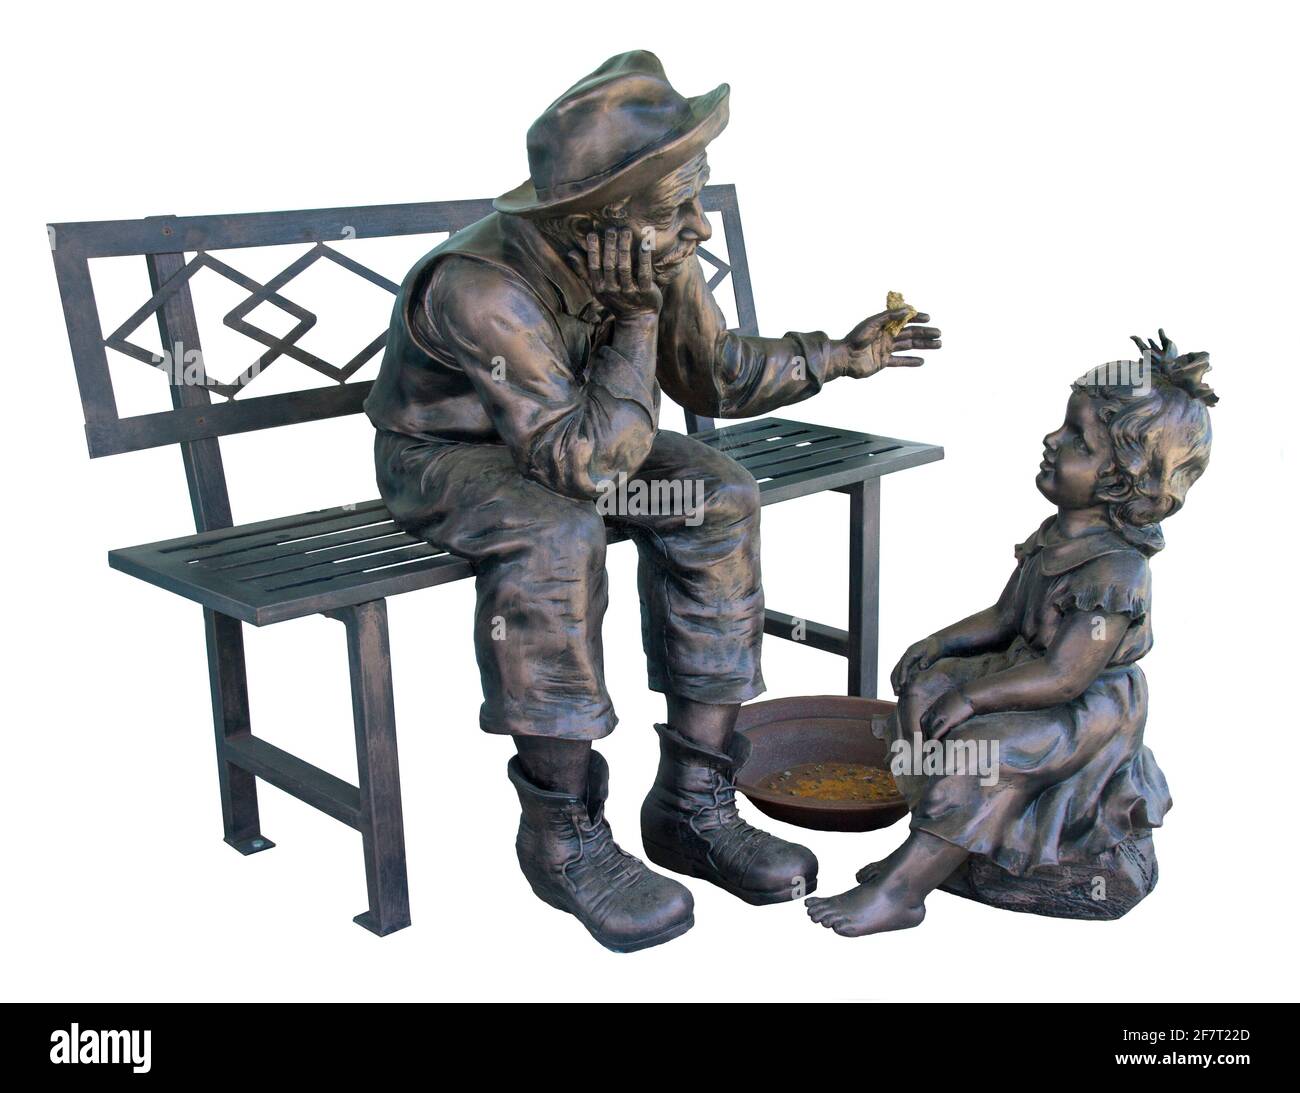 Atemberaubende, detailreiche Bronzeskulptur des Mannes / Goldminer Auf einer Bank sitzend, die einen goldenen Nugget zu einem zeigt Kleines Kind - auf weißem Hintergrund Stockfoto